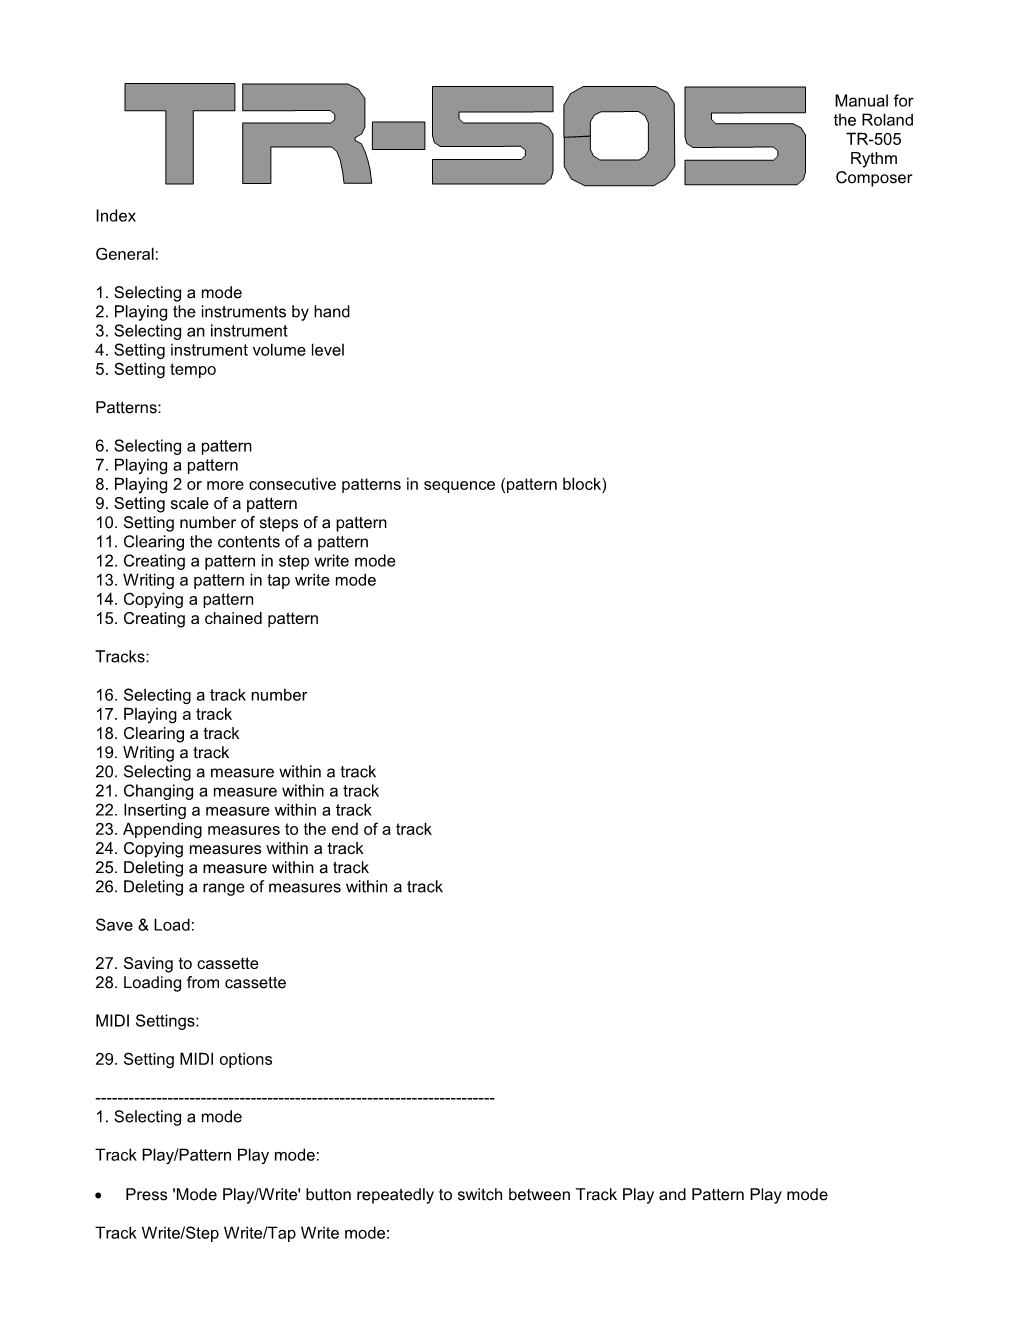 Manual for the Roland TR-505 Rythm Composer